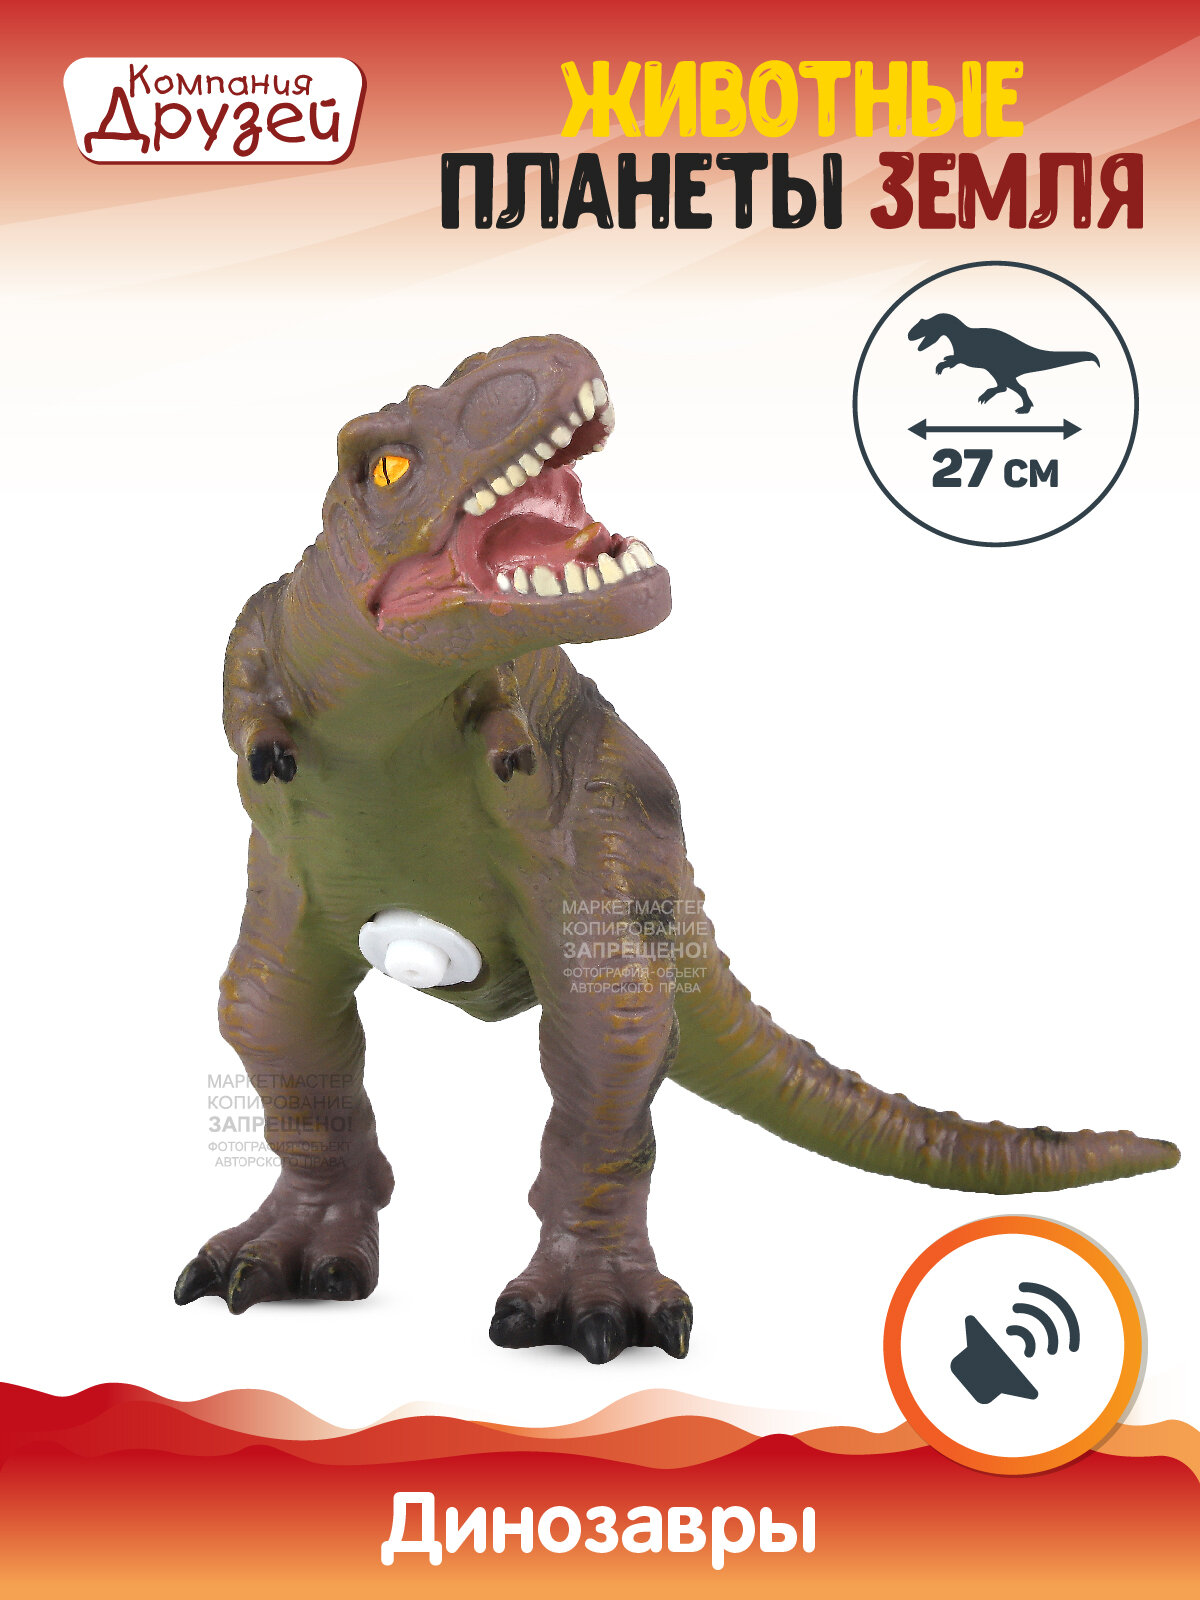 Игрушка для детей Динозавр ТМ компания друзей, серия "Животные планеты Земля", с чипом, звук - рёв животного, эластичный пластик, JB0208306